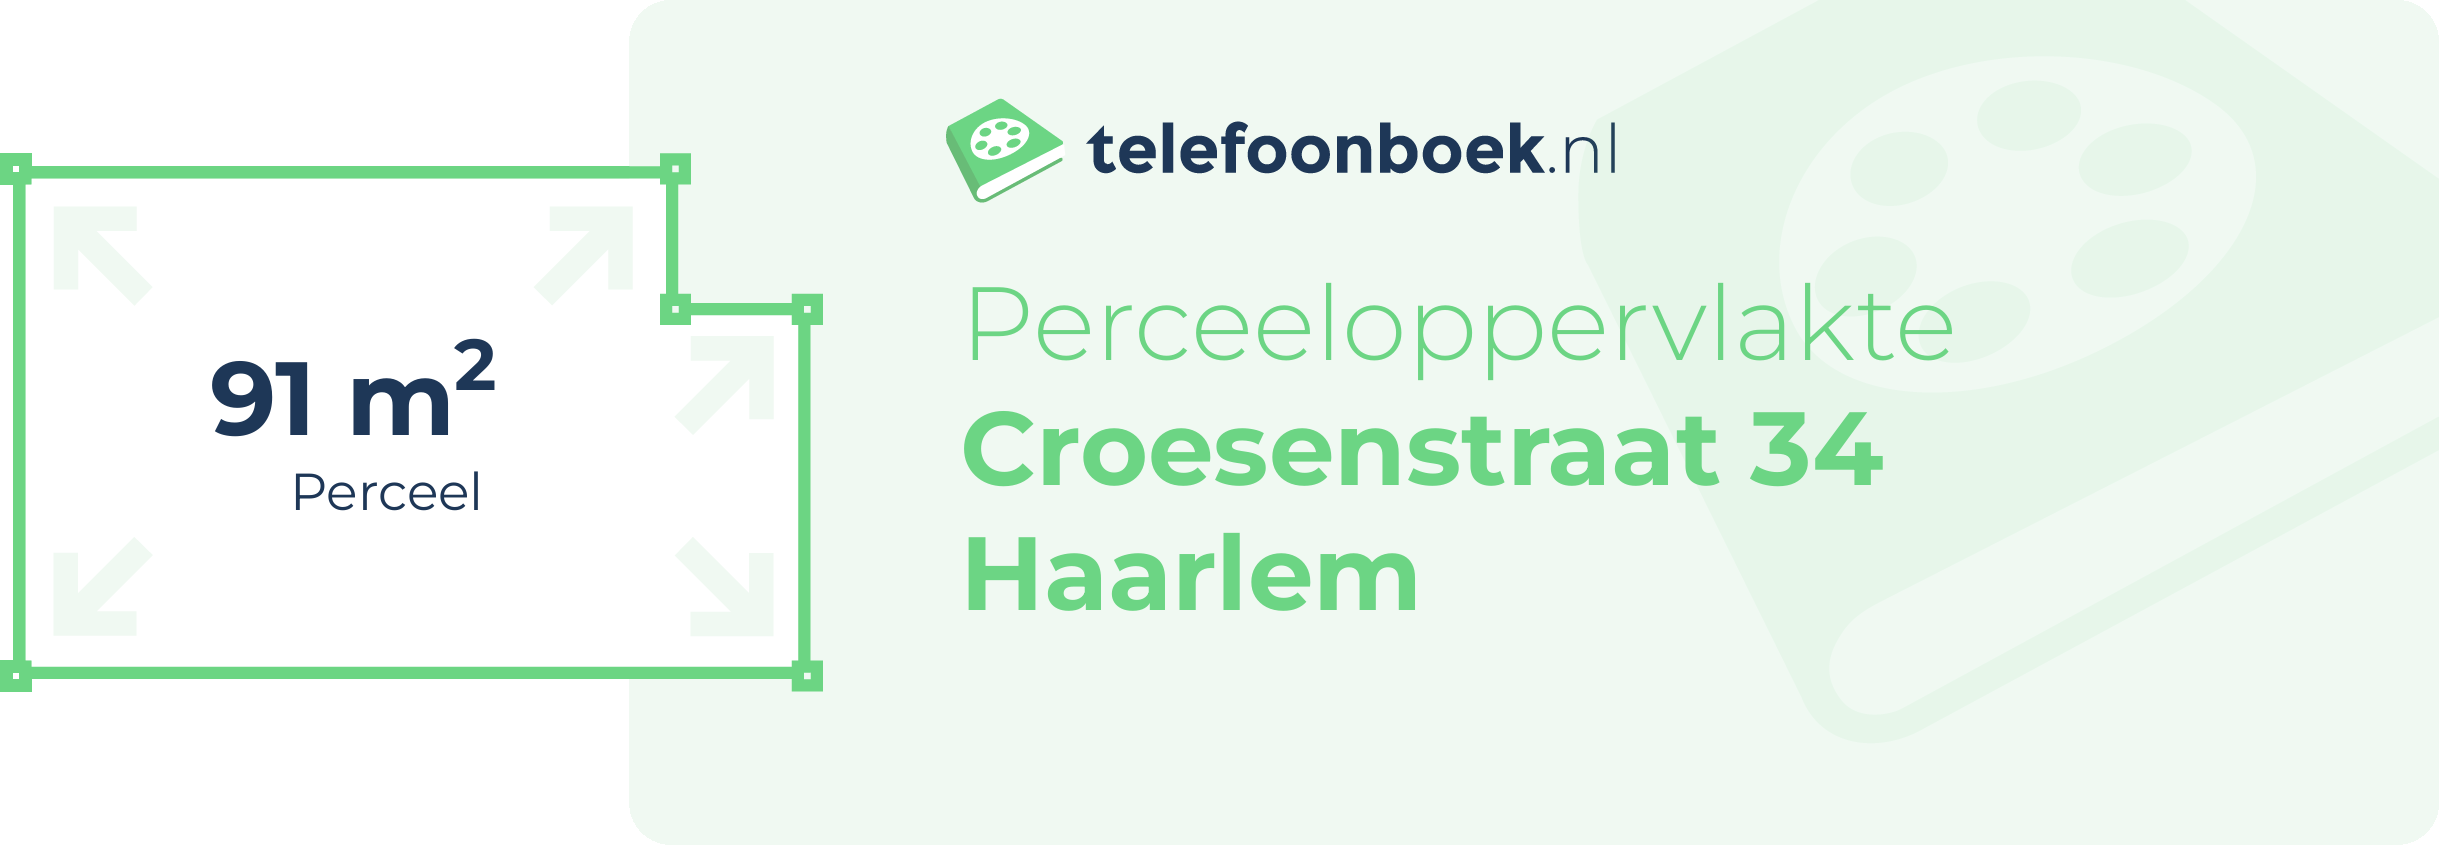 Perceeloppervlakte Croesenstraat 34 Haarlem